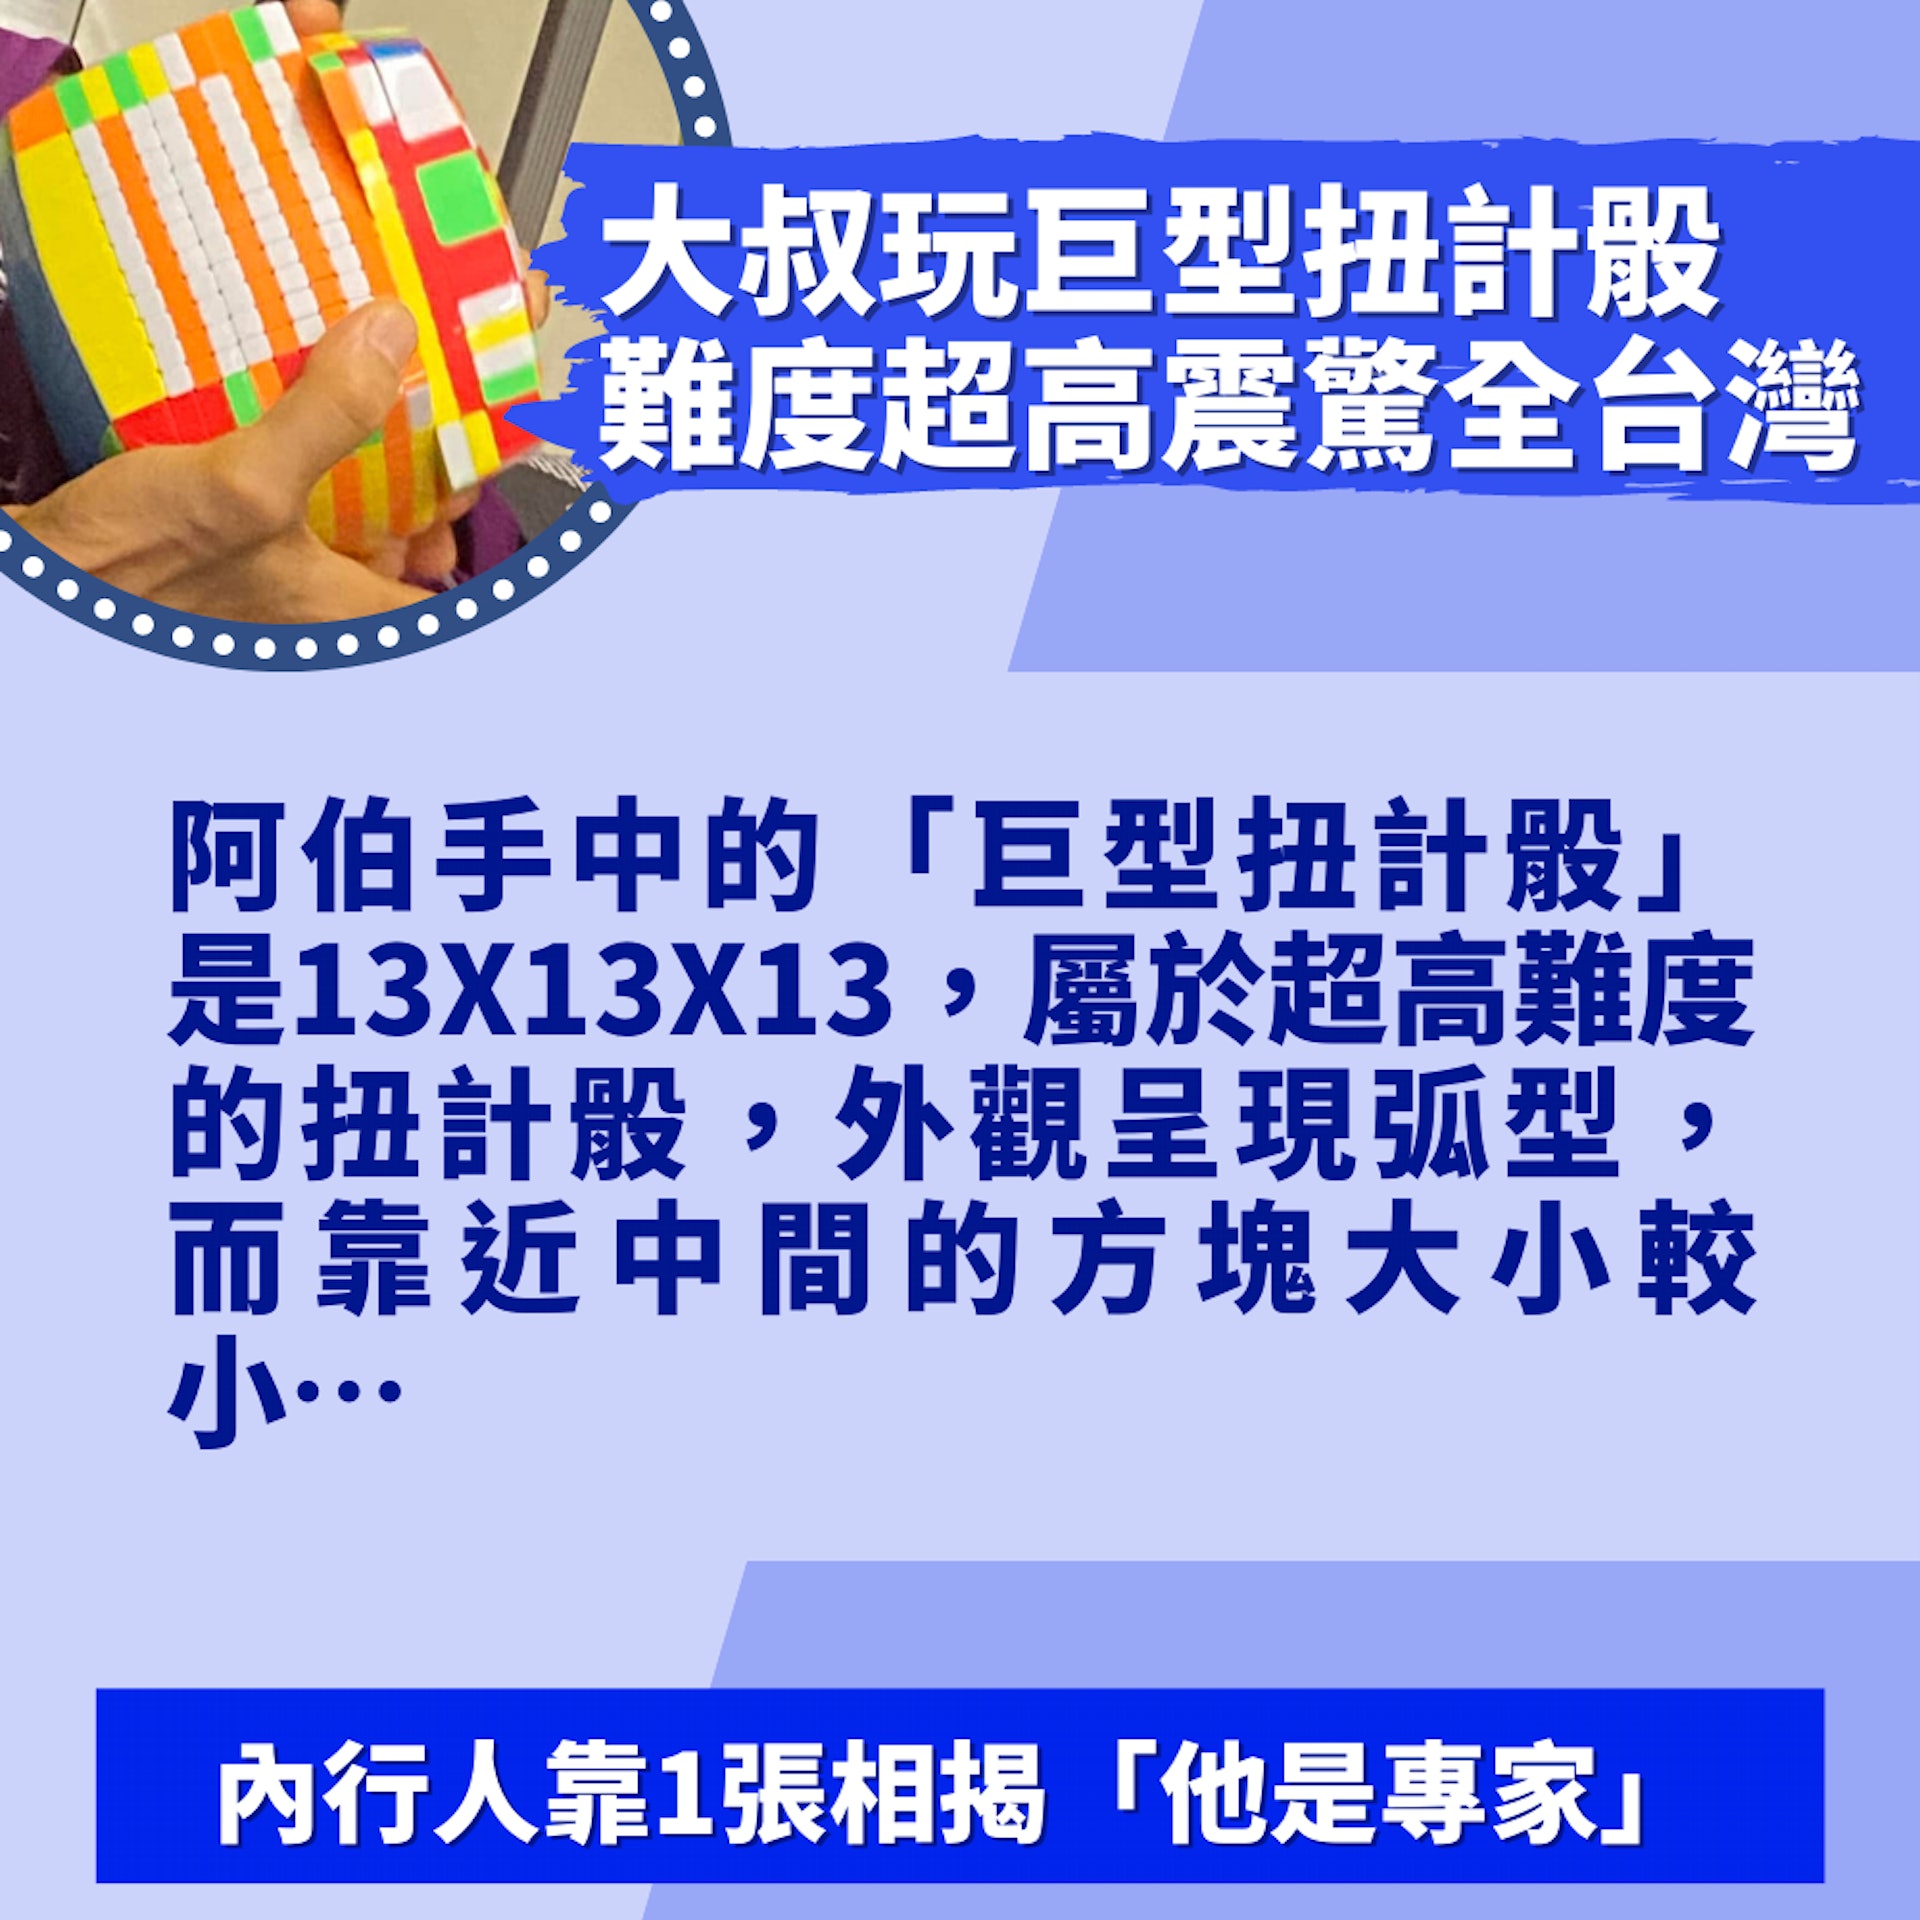 大叔捷運玩「巨型扭計骰」難度超高震驚全台灣網民封智商天花板 image